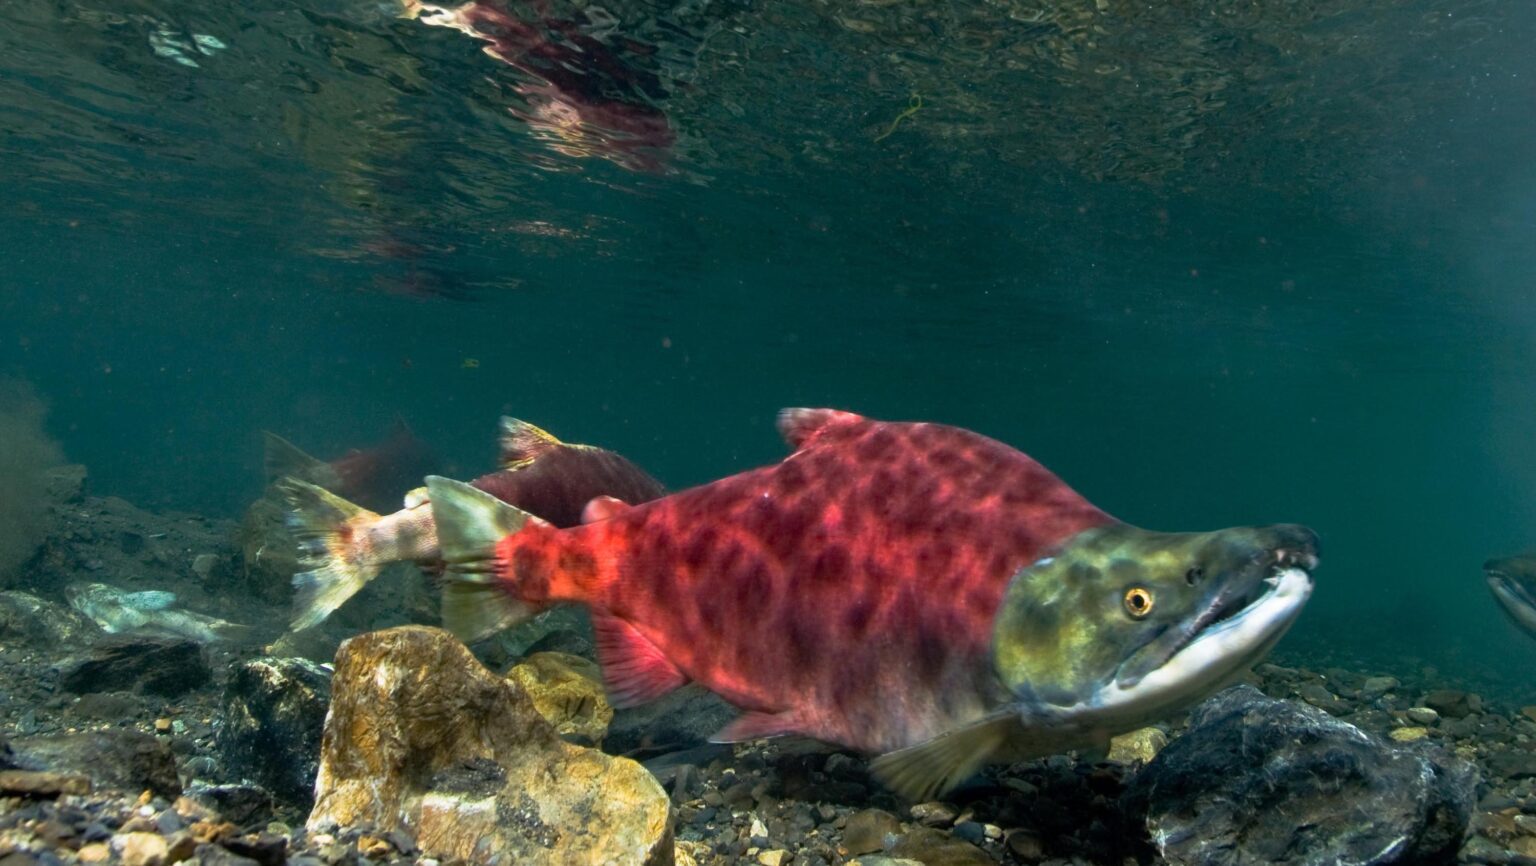 Copper River Salmon Catch Nears 400,000 Fish